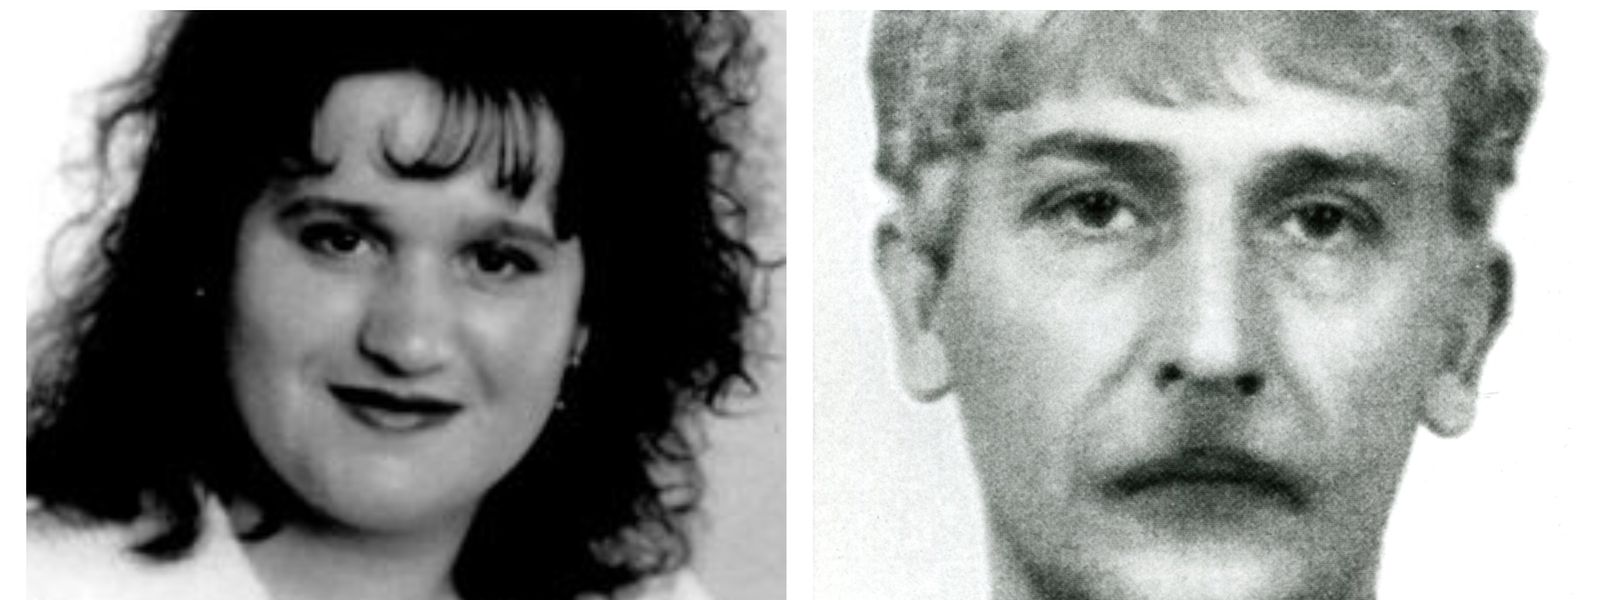 Die Portugiesin Maria Goncalves wurde nur 25 Jahre alt. Rechts das Phantombild des Tatverdächtigen. Foto: Polizeipräsidium Trier